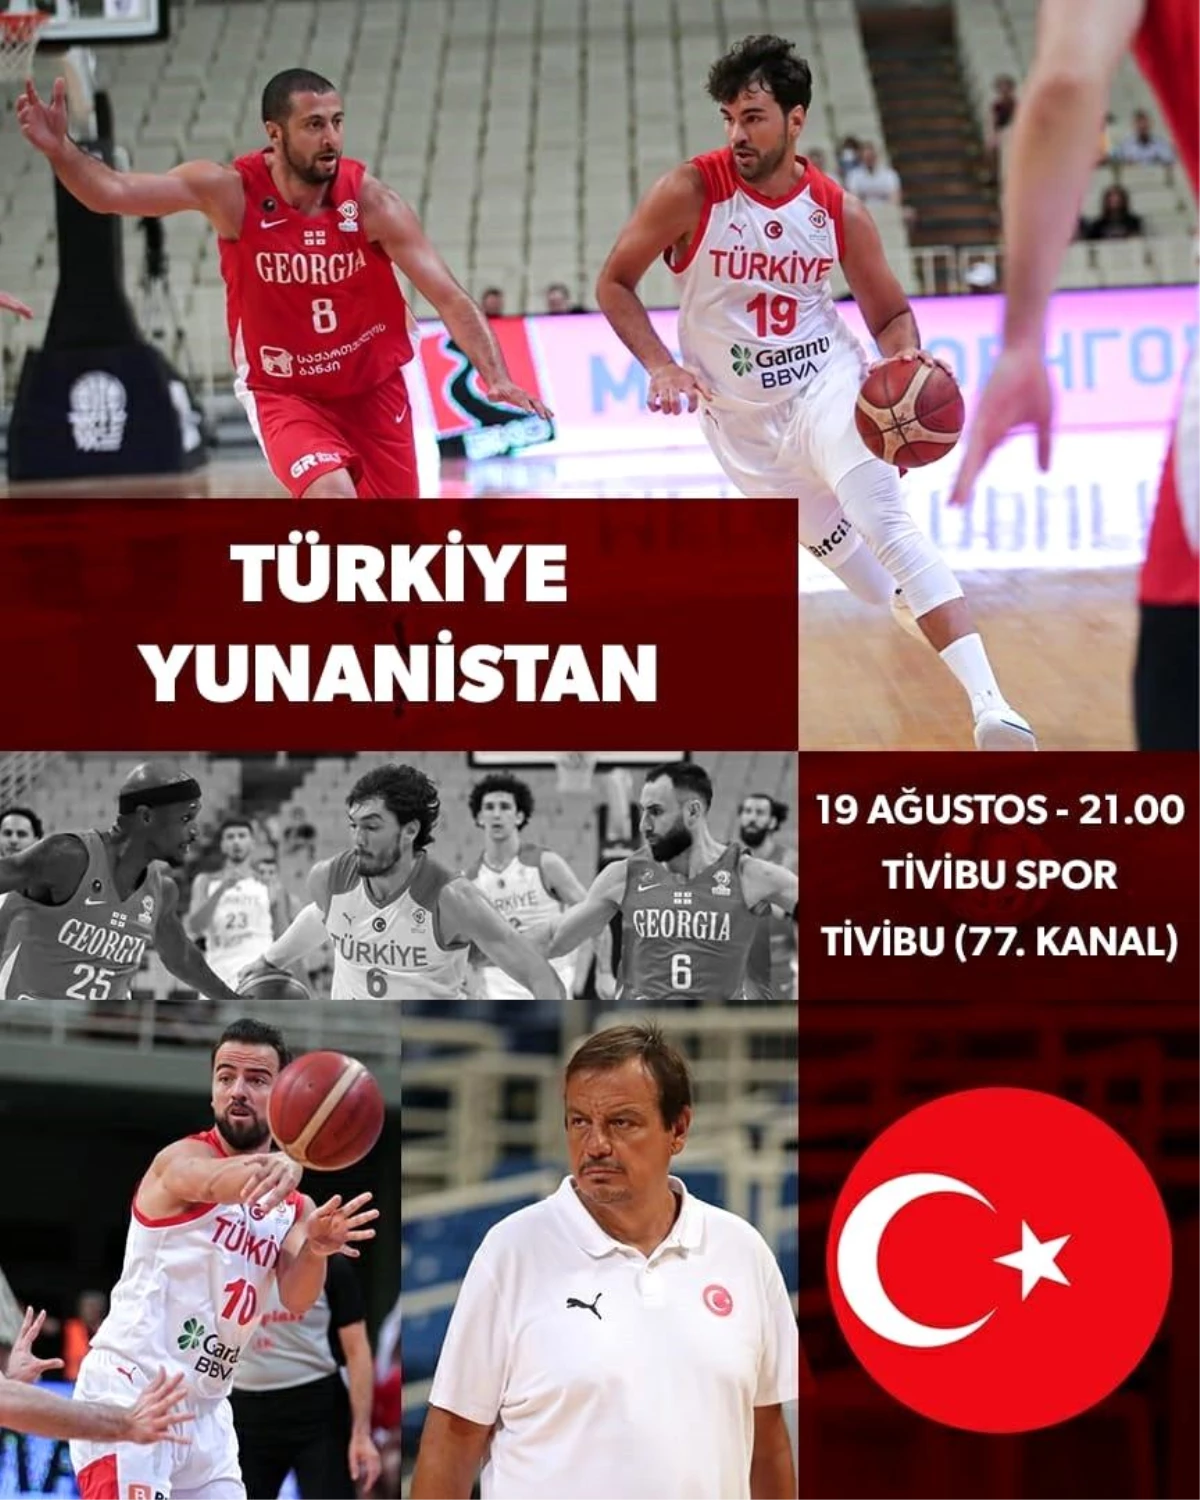 Türkiye-Yunanistan basketbol maçı Tivibu Spor\'da yayınlanacak